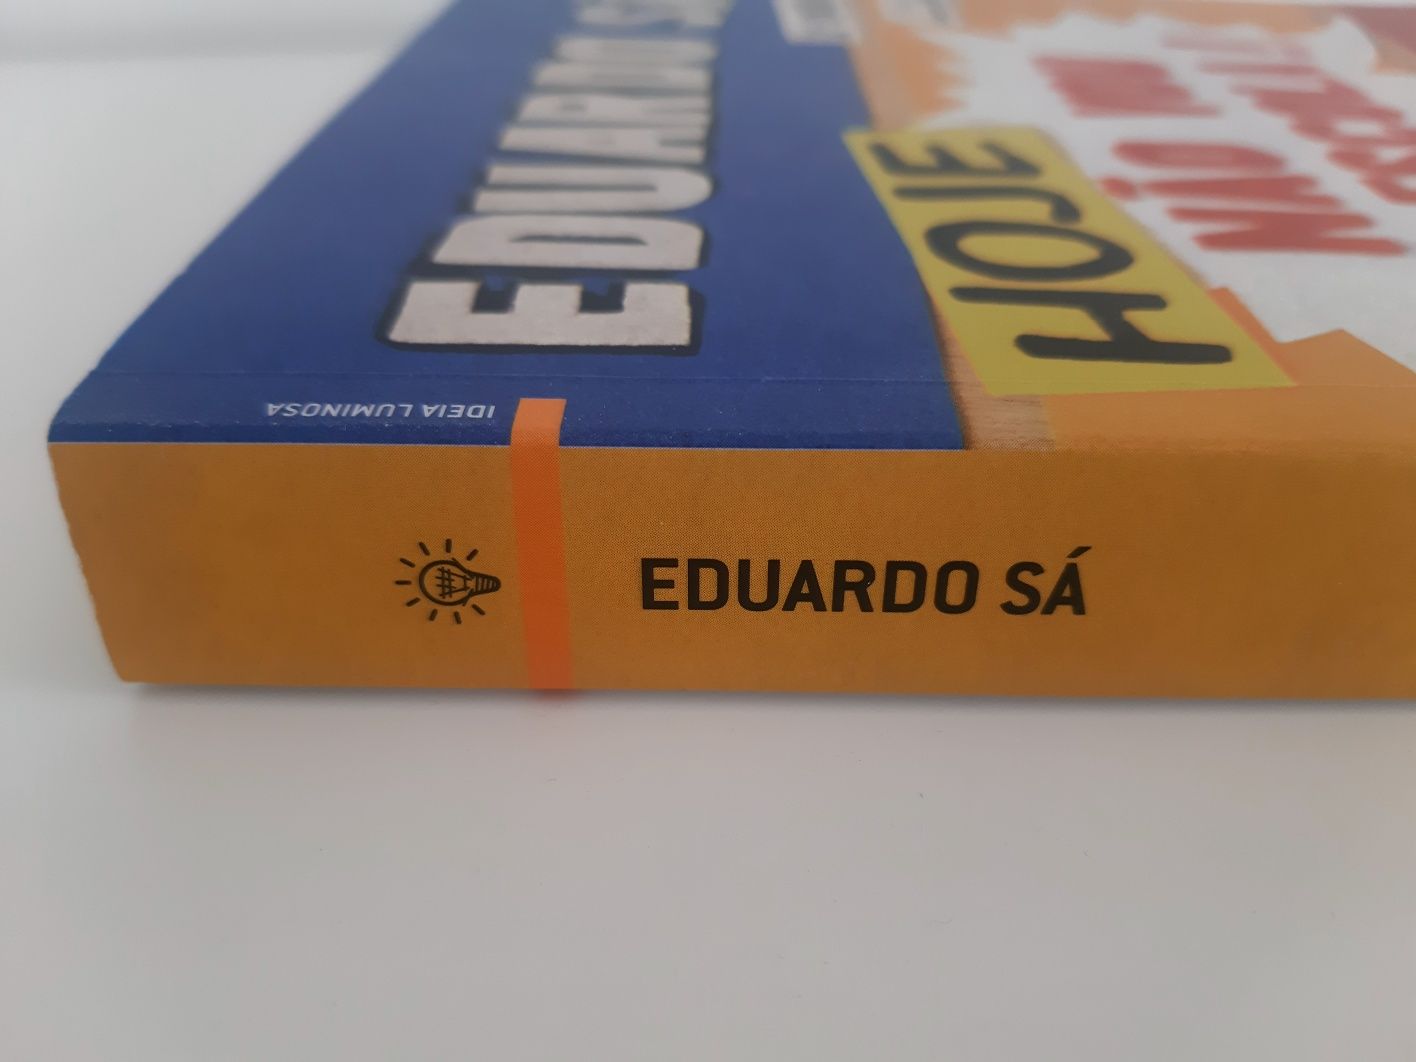 Livro Eduardo Sá